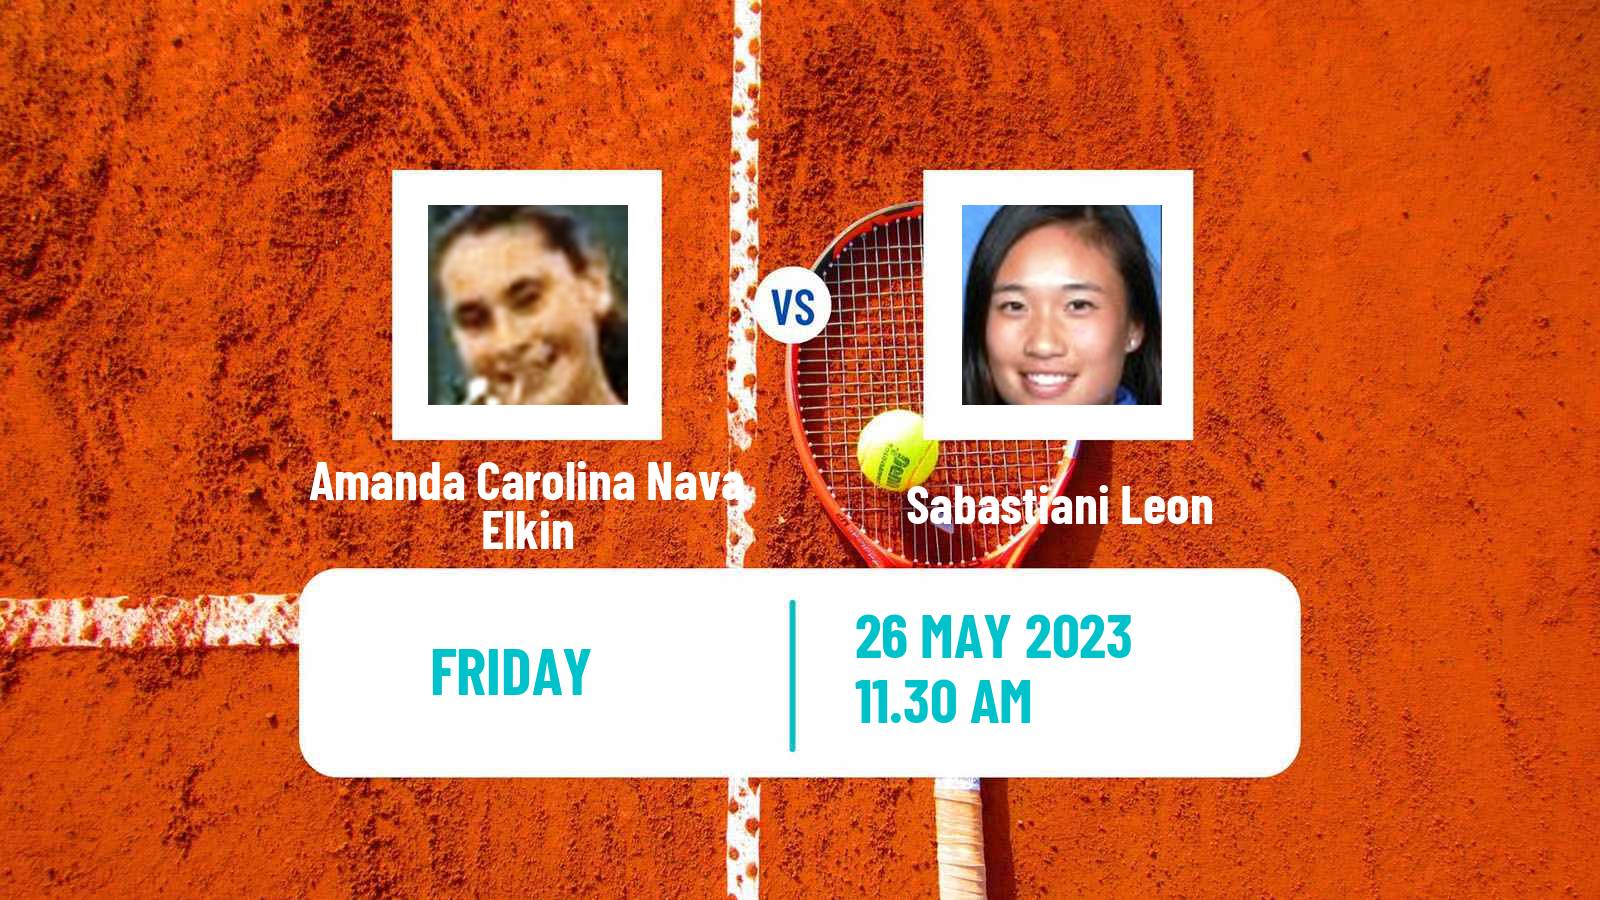 Tennis ITF W15 Recife Women Amanda Carolina Nava Elkin - Sabastiani Leon